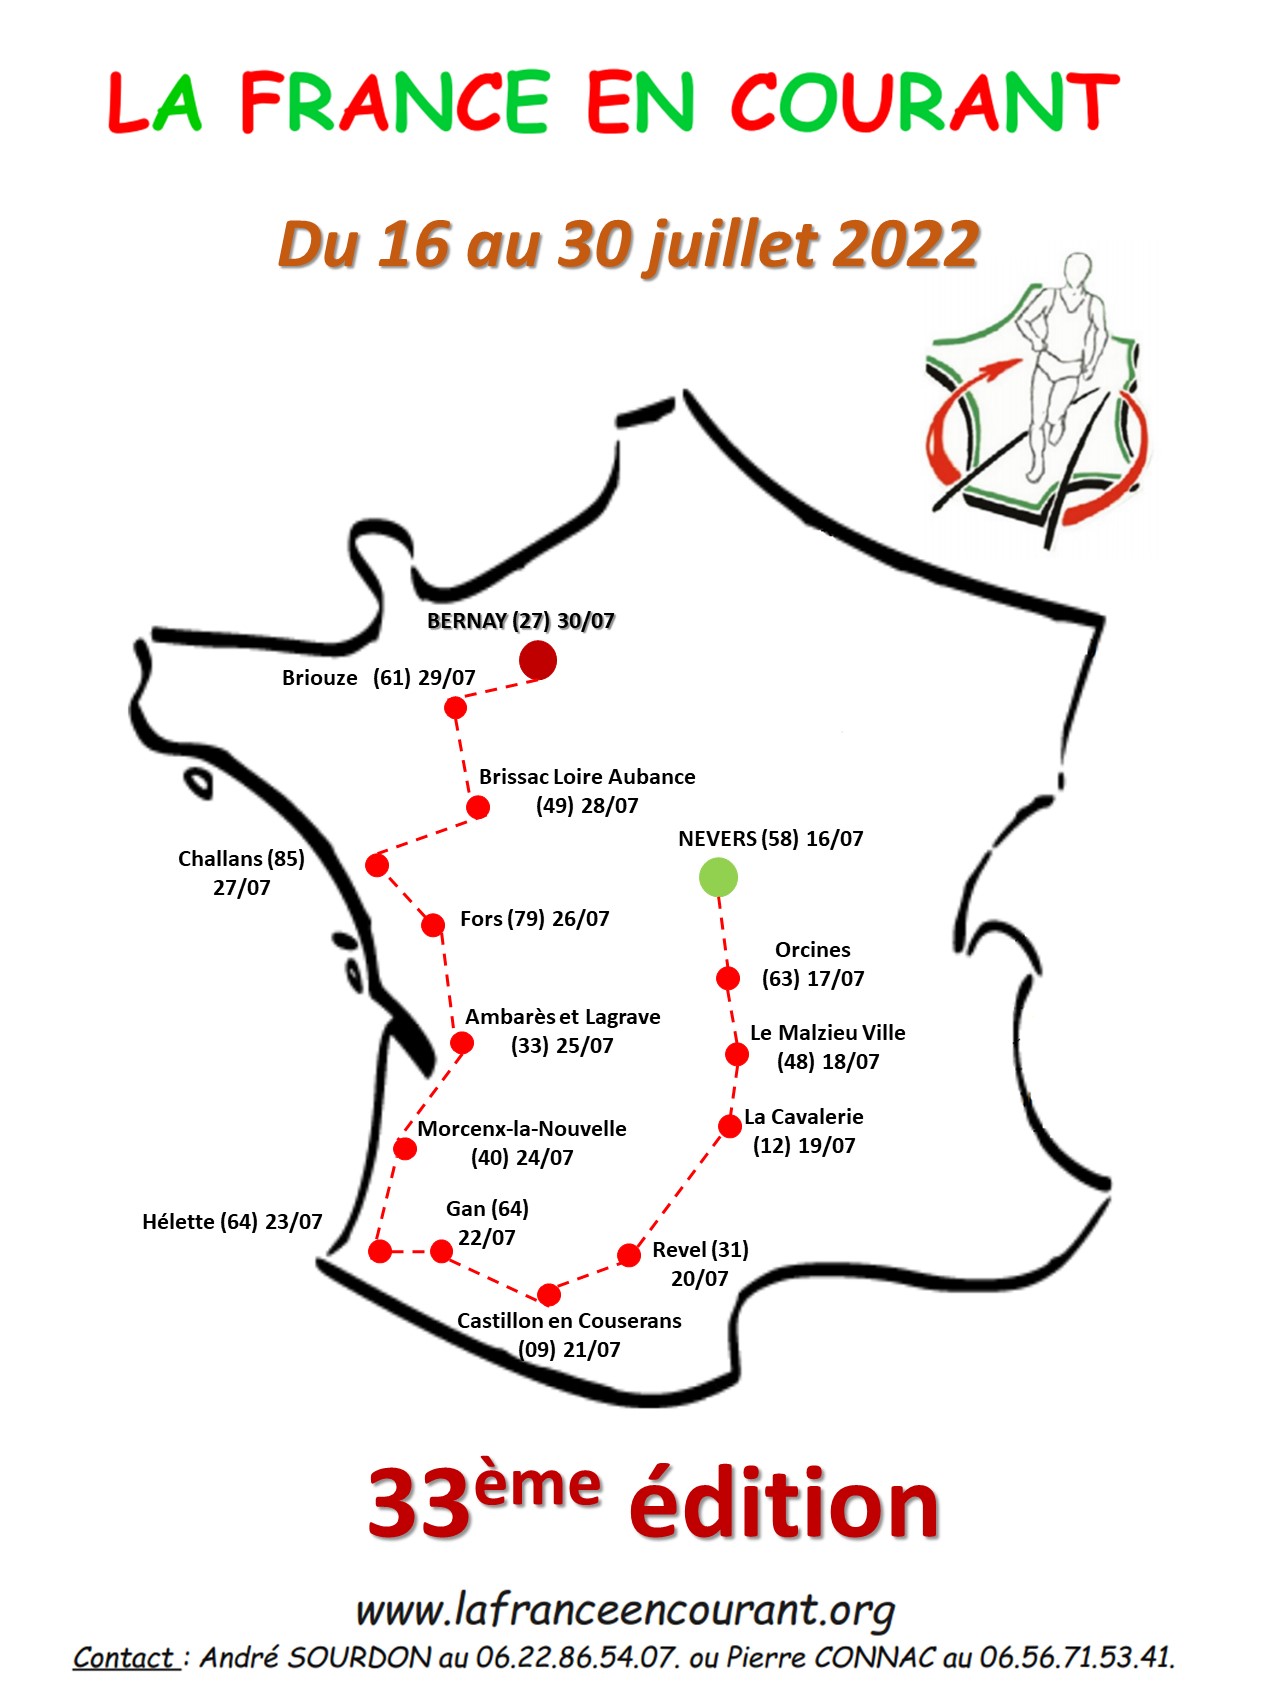 Du 16 au 30 juillet, La France en Courant : chaque jour, la boulangerie sera à l’honneur !